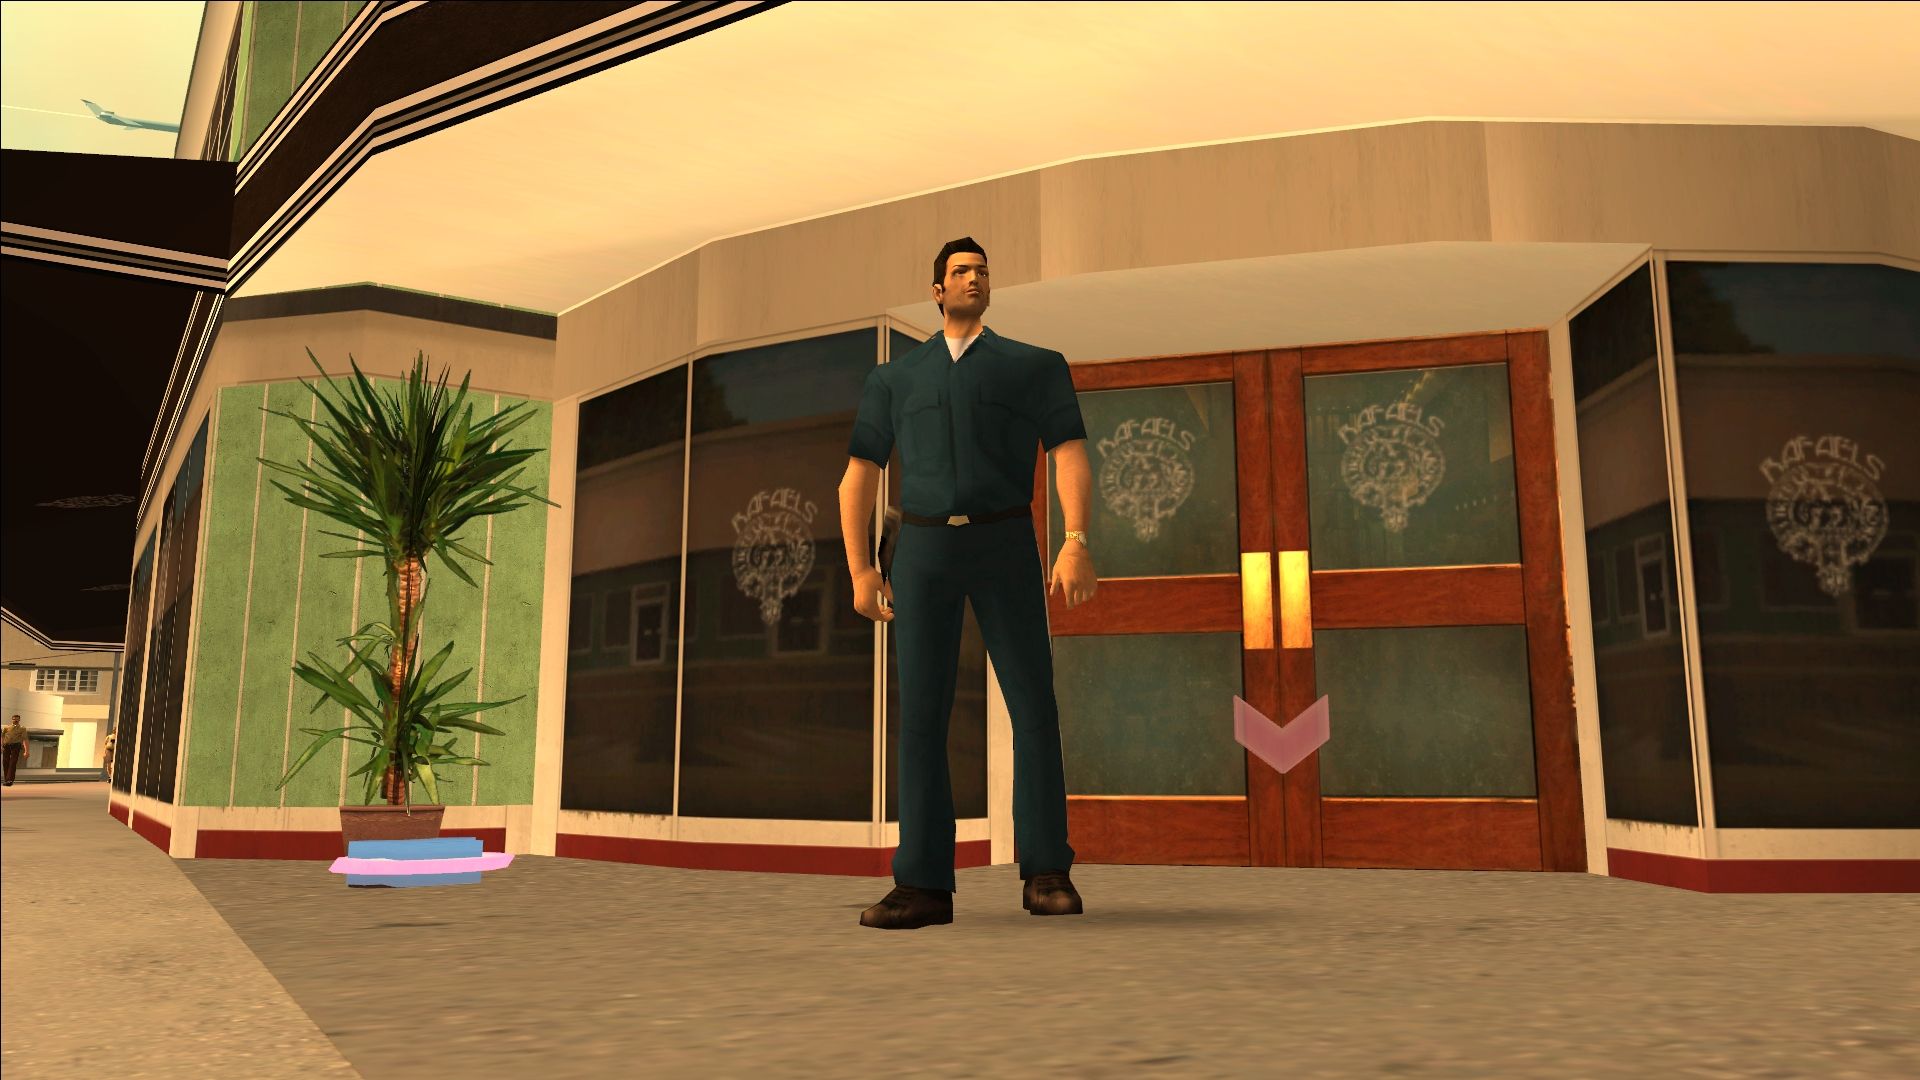 Изображение из Grand Theft Auto: Vice City, показывающее Томми Версетти возле магазина одежды.